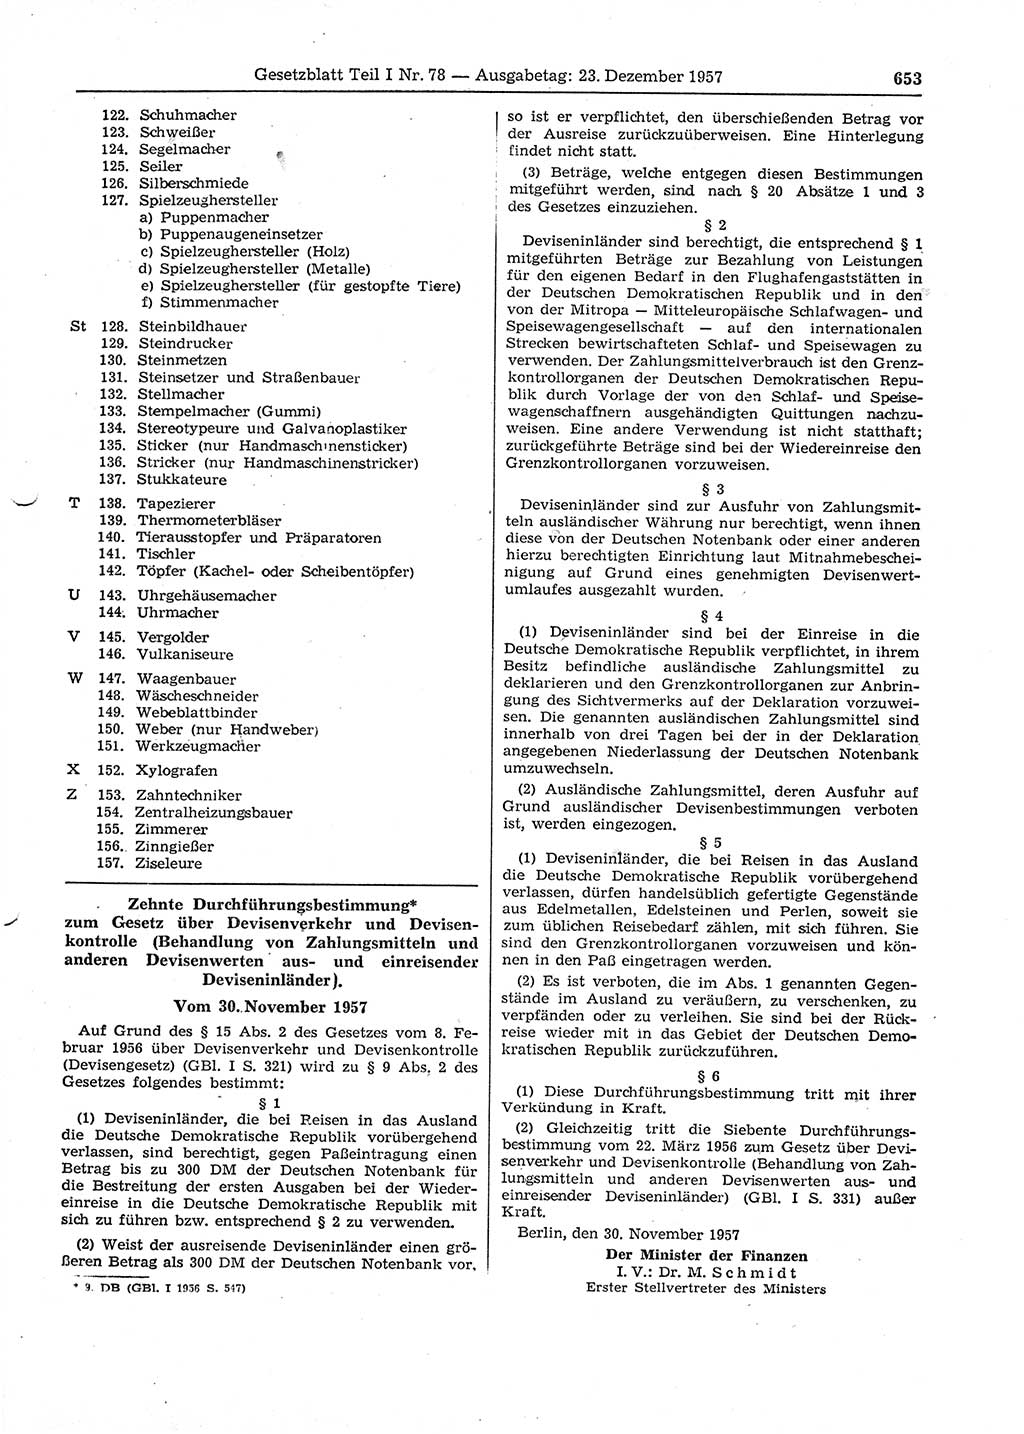 Gesetzblatt (GBl.) der Deutschen Demokratischen Republik (DDR) Teil Ⅰ 1957, Seite 653 (GBl. DDR Ⅰ 1957, S. 653)